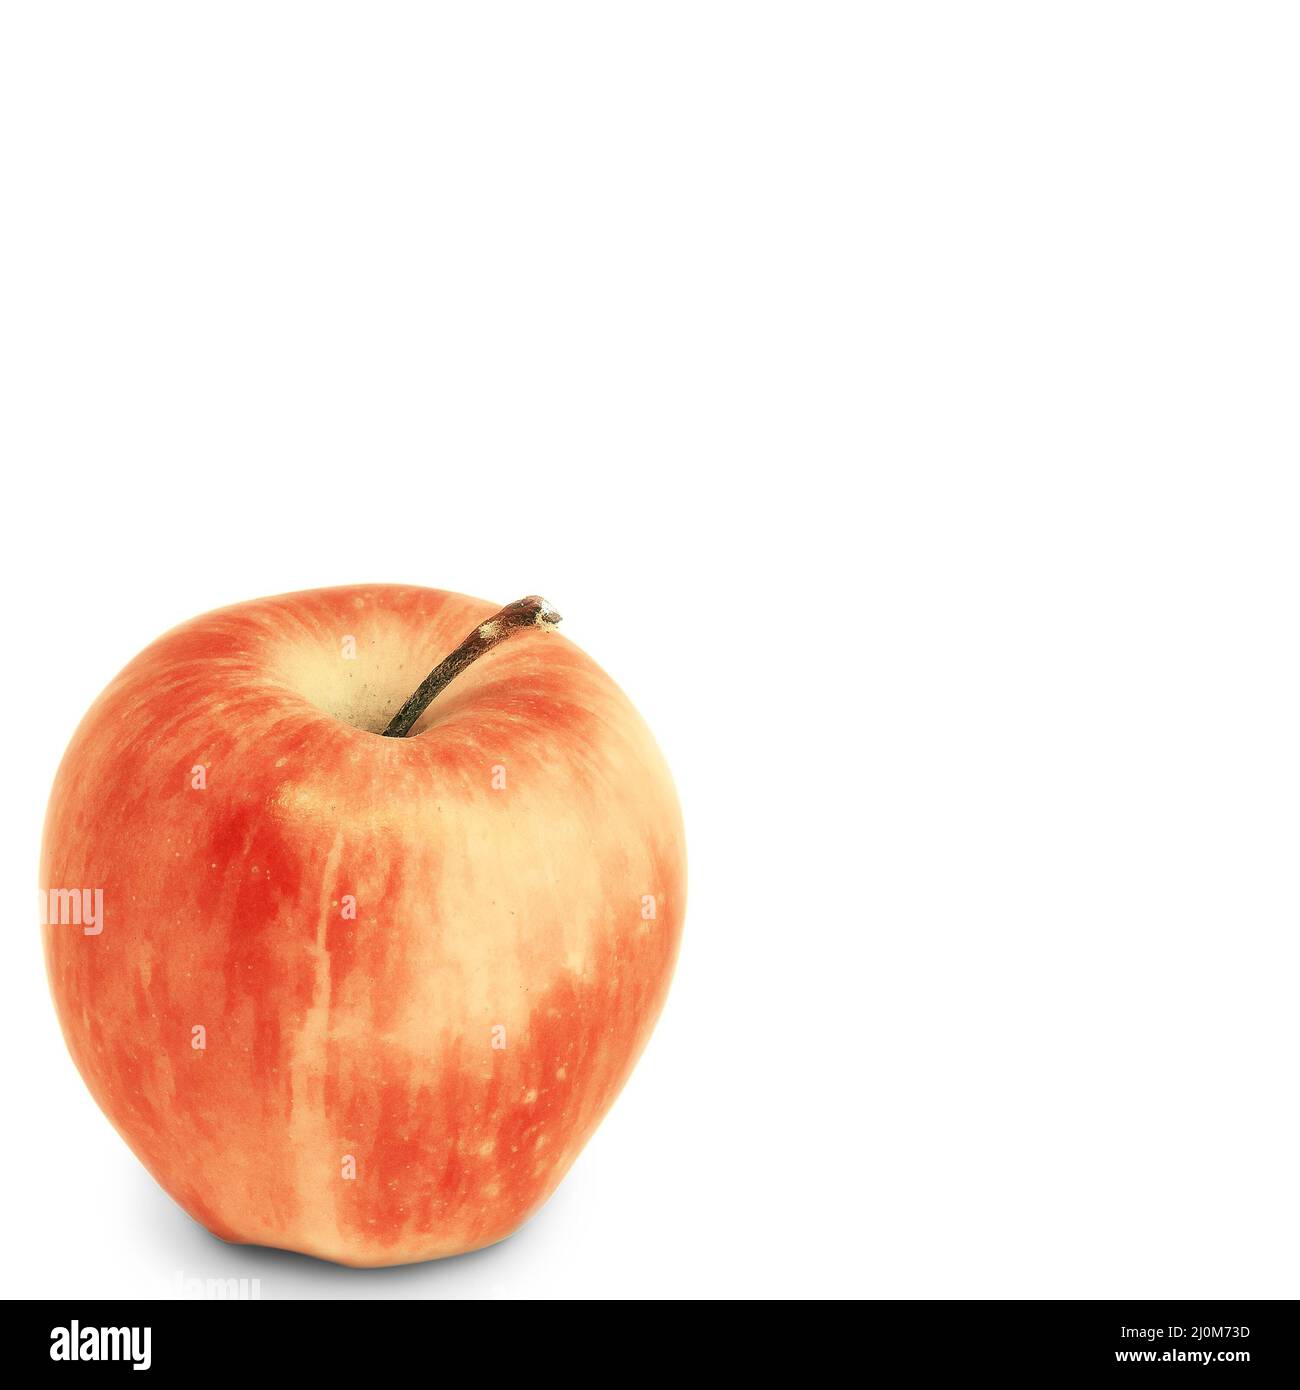 Composizione semplice con una mela. Mela rossa su sfondo isolato. Mela matura nell'angolo su sfondo bianco. Rip. Fresco Foto Stock